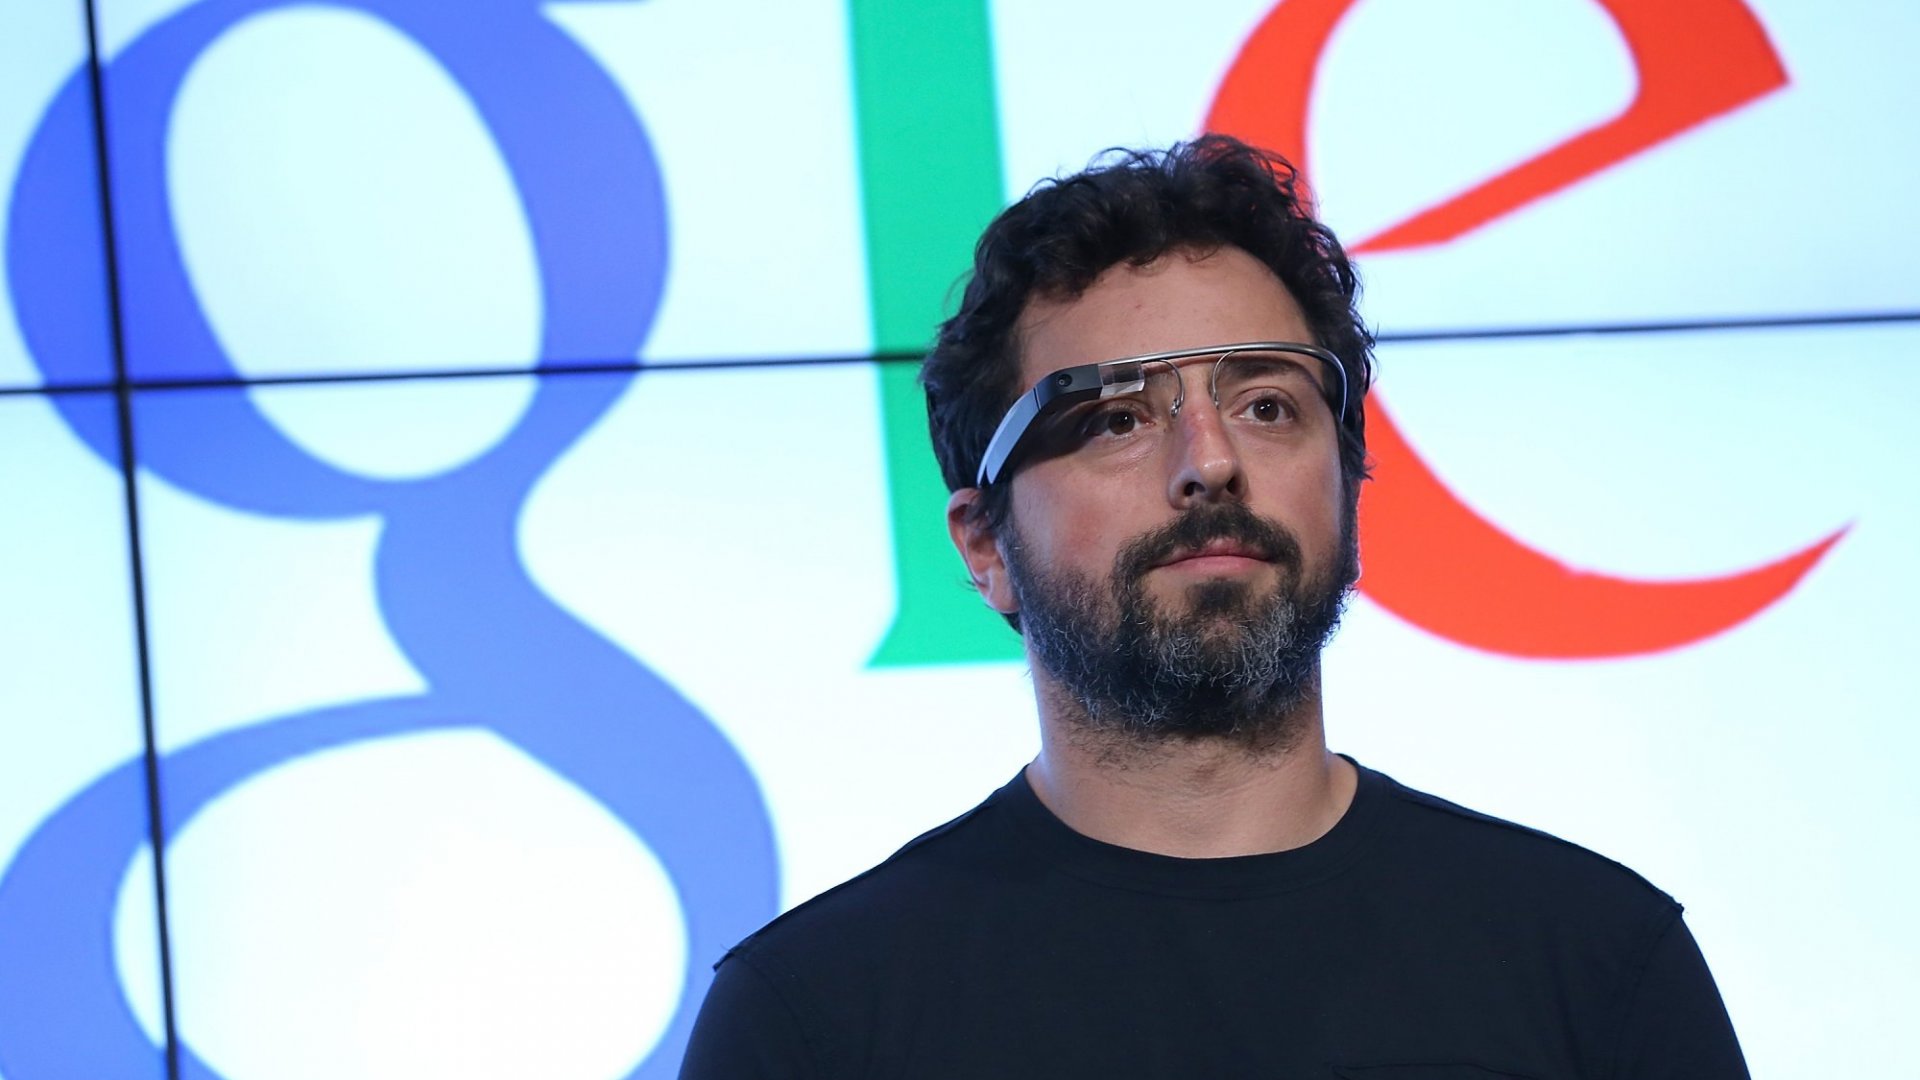 kỹ sư Sergey Brin đã trở về công ty cũ và bắt tay vào dự án lập trình sau gần 4 năm vắng bóng.